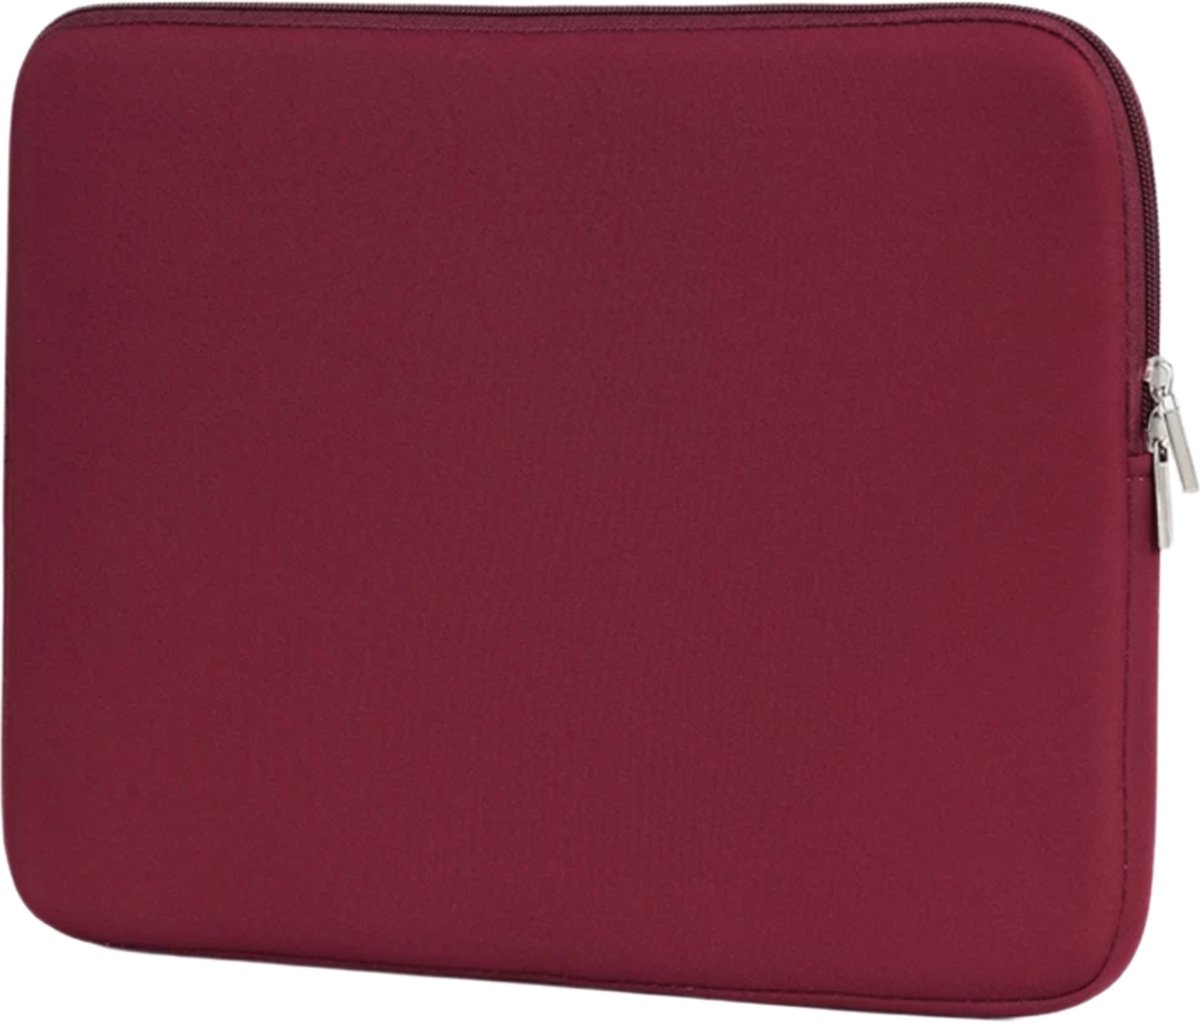 Spatwaterdichte laptopsleeve – 14,6 inch - dubbele ritssluiting- bordeaux rood - unisex - spatwaterbestending